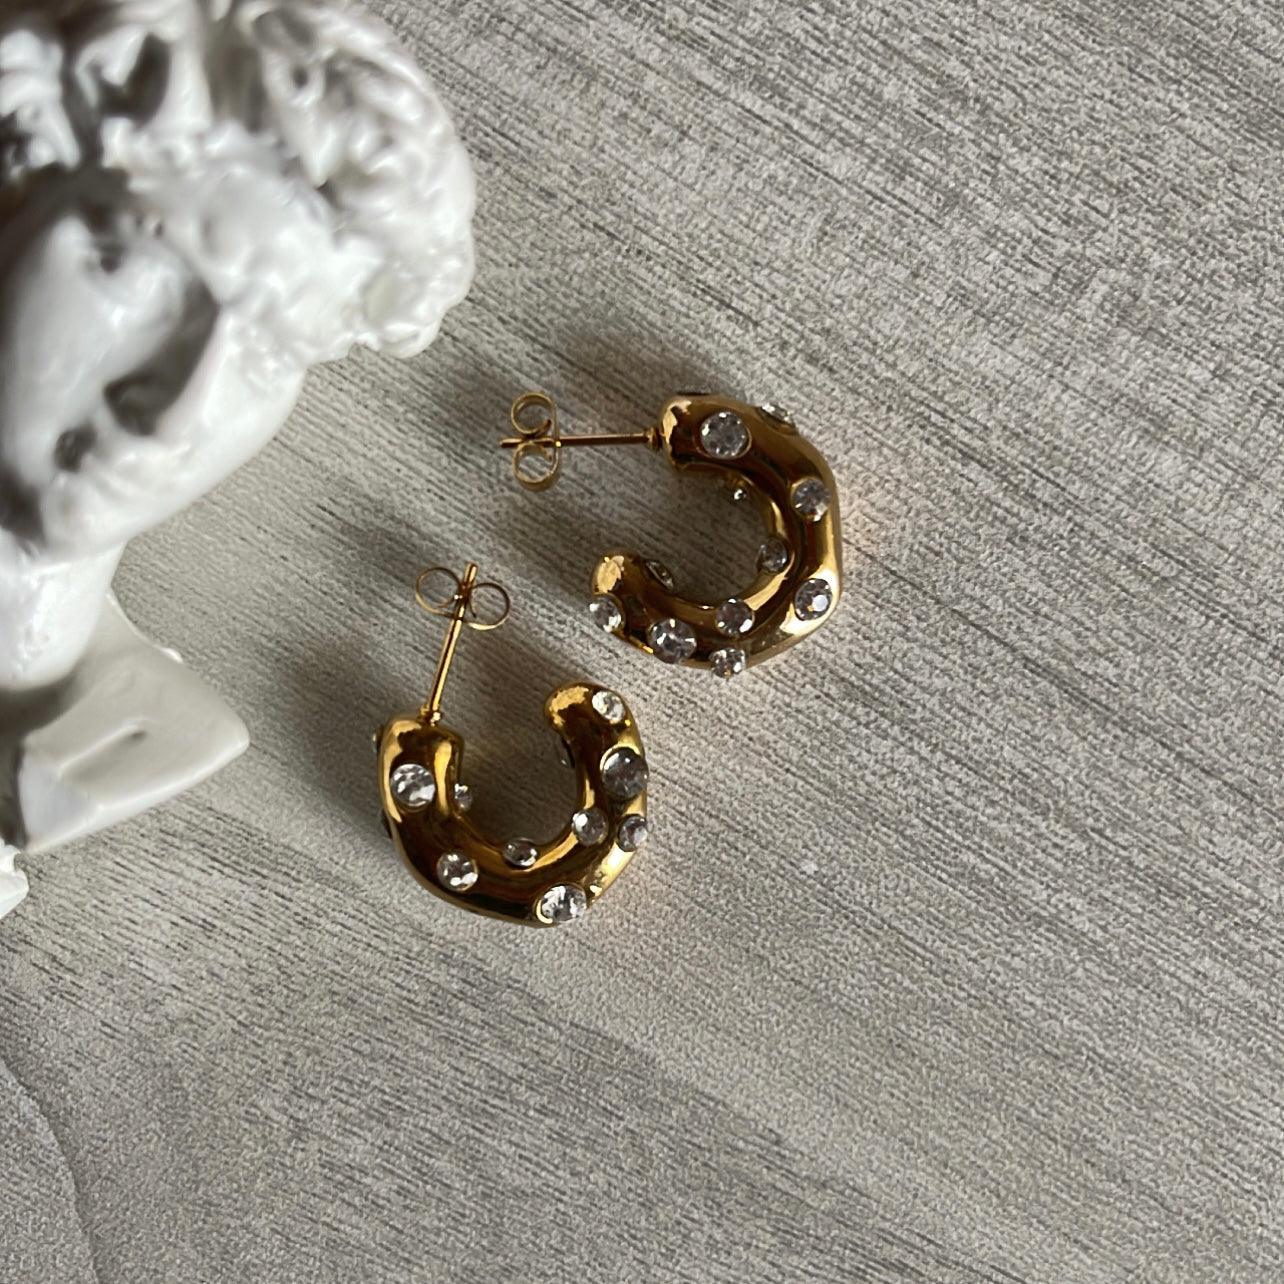 Adler | 18k gold plated earrings. - Ladywithcraft